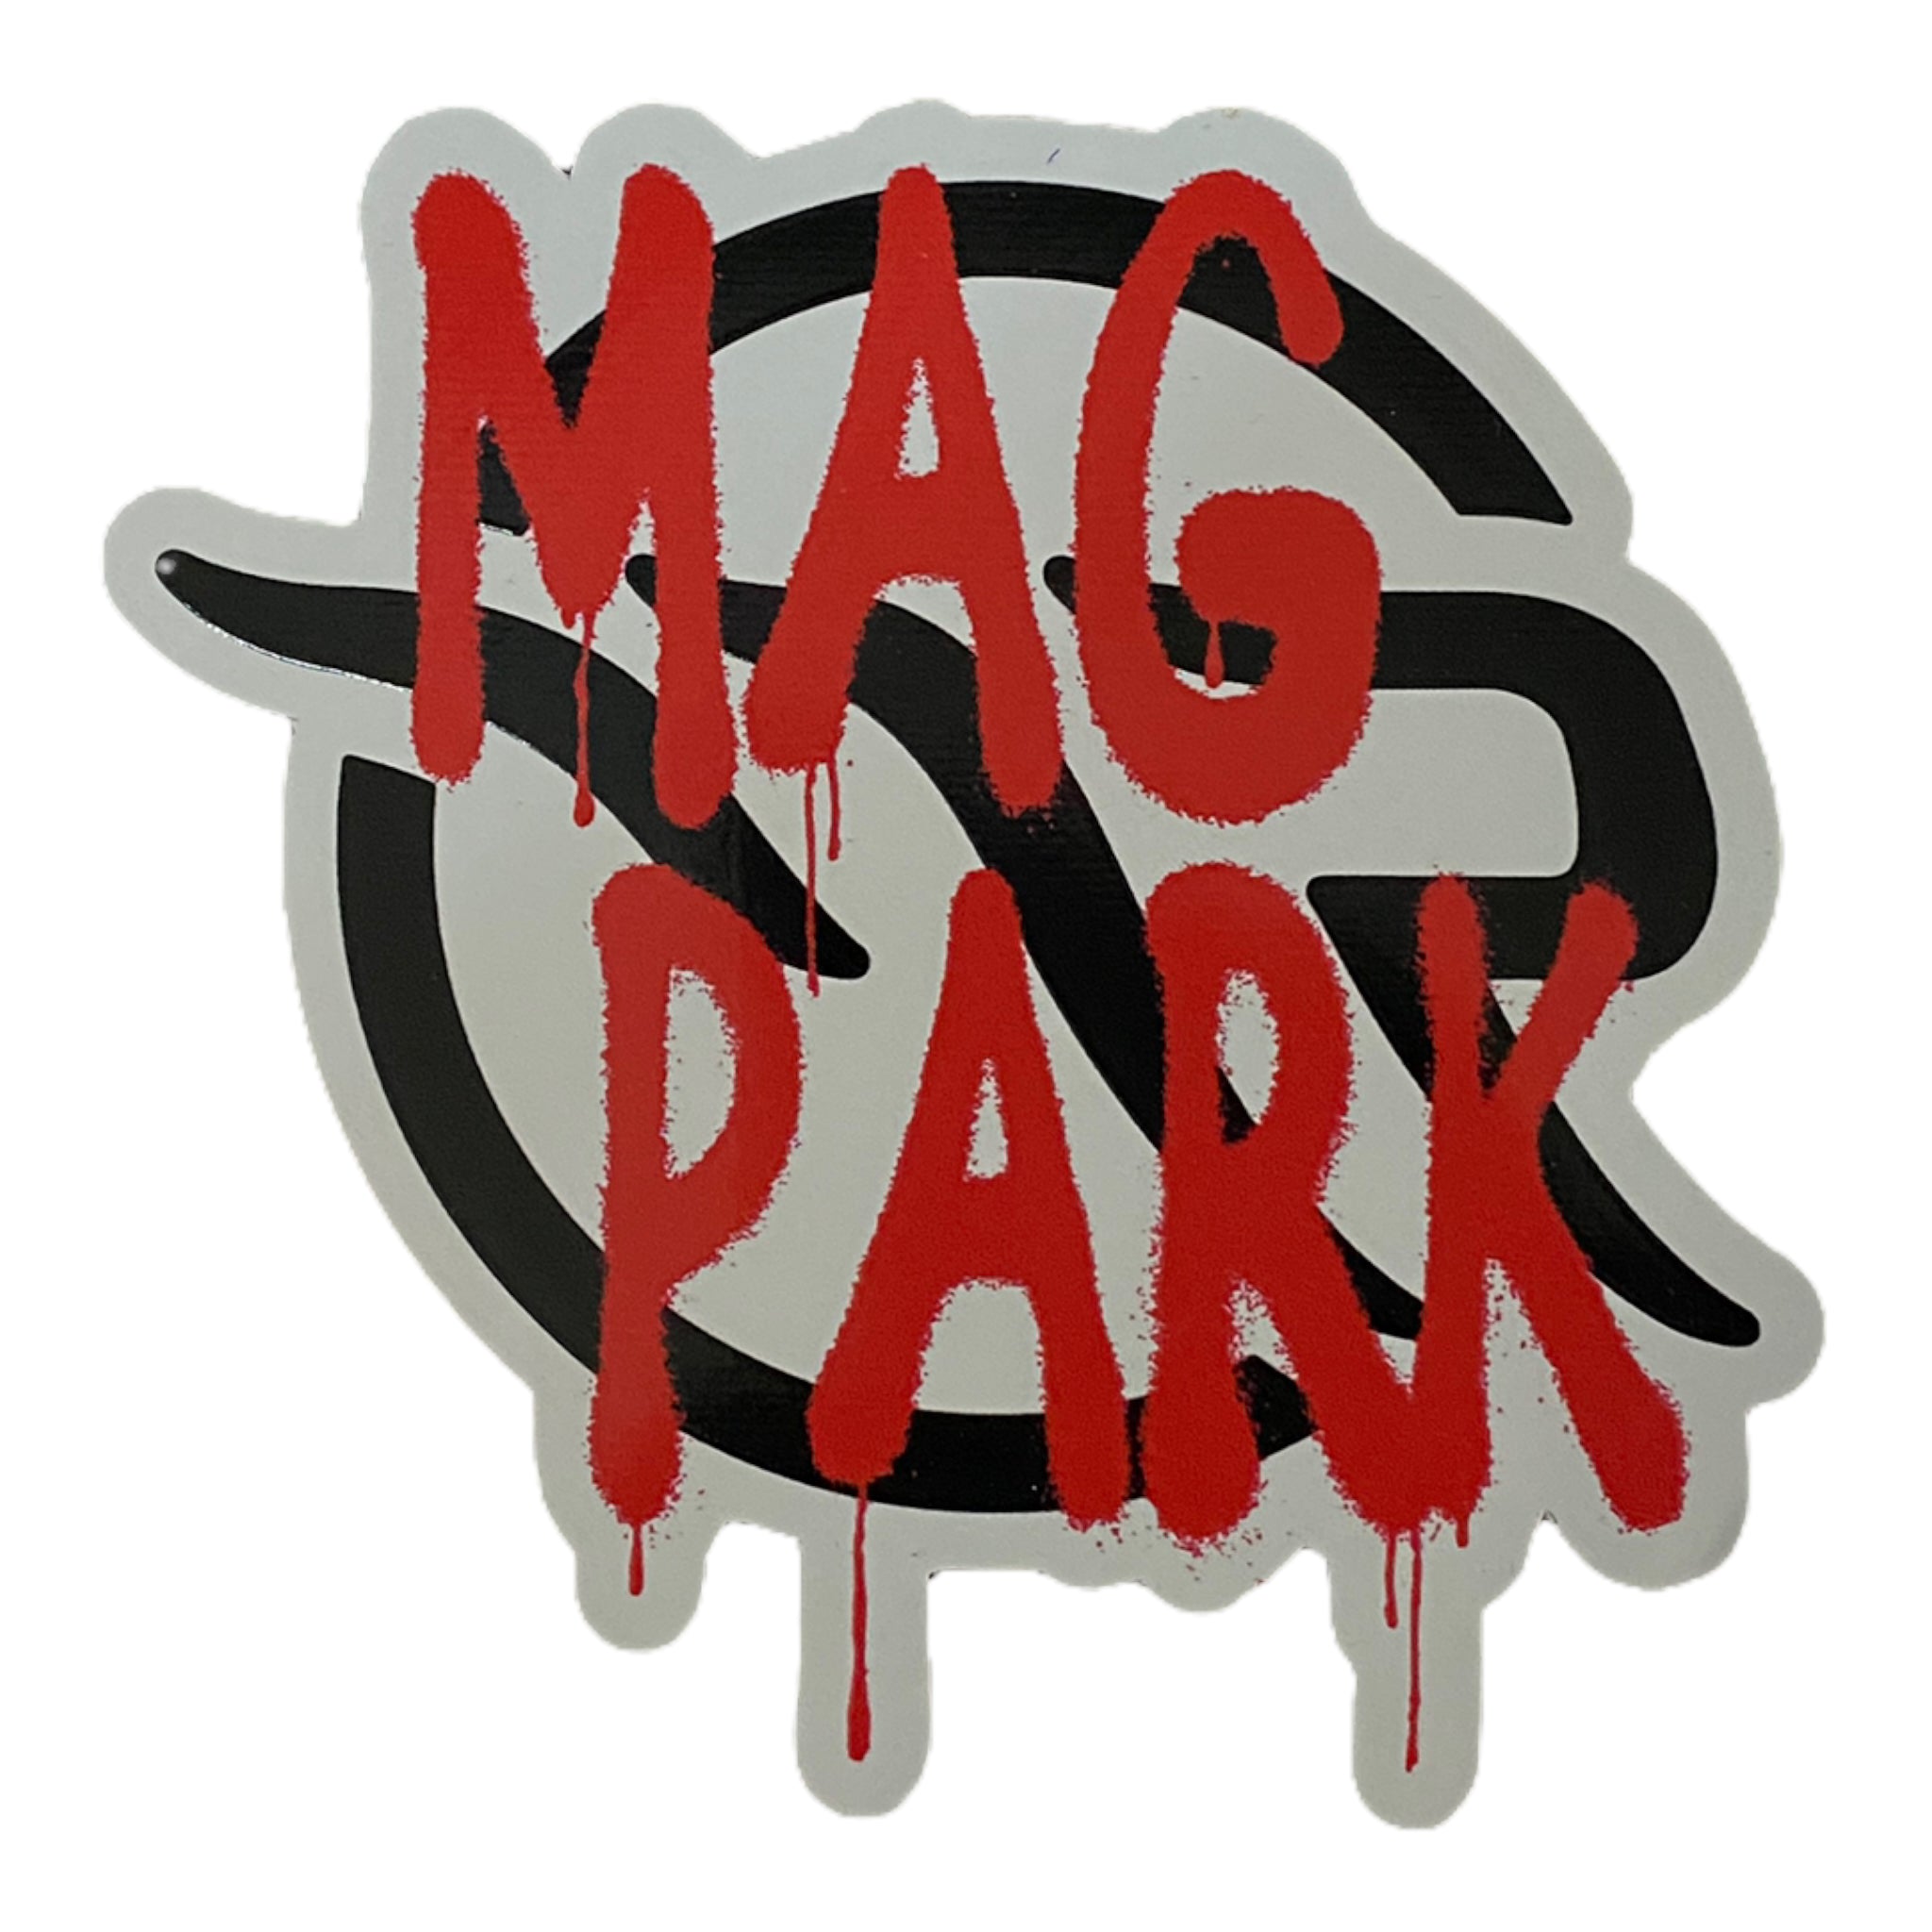 The Magnolia Park Graffiti Sticker